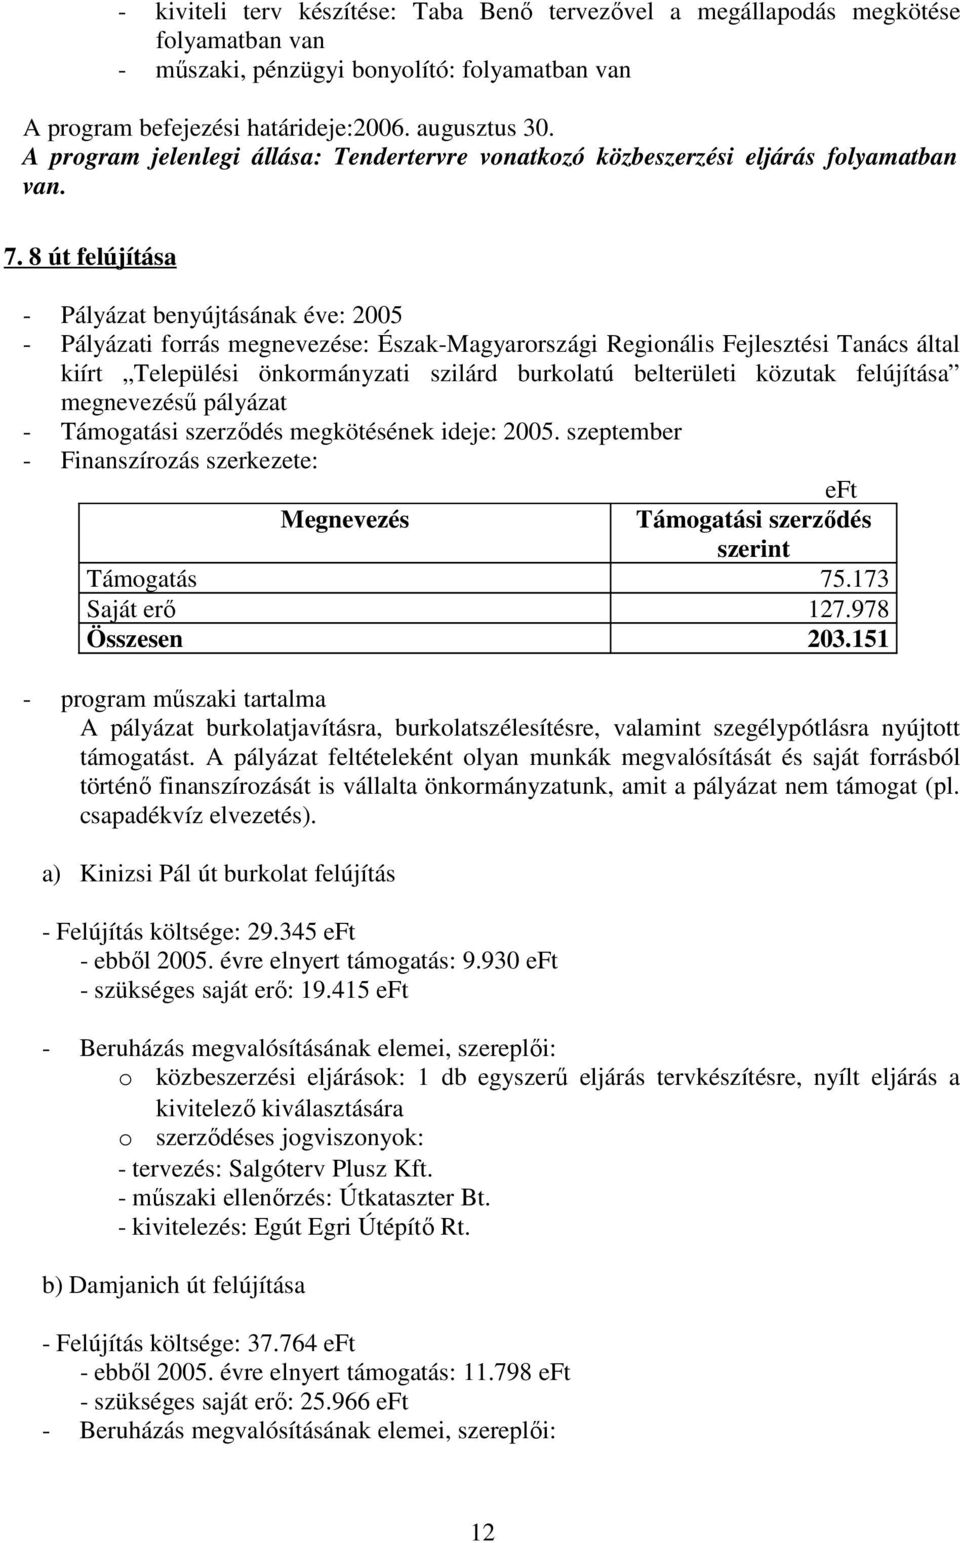 8 út felújítása - Pályázat benyújtásának éve: 2005 - Pályázati forrás megnevezése: Észak-Magyarországi Regionális Fejlesztési Tanács által kiírt Települési önkormányzati szilárd burkolatú belterületi